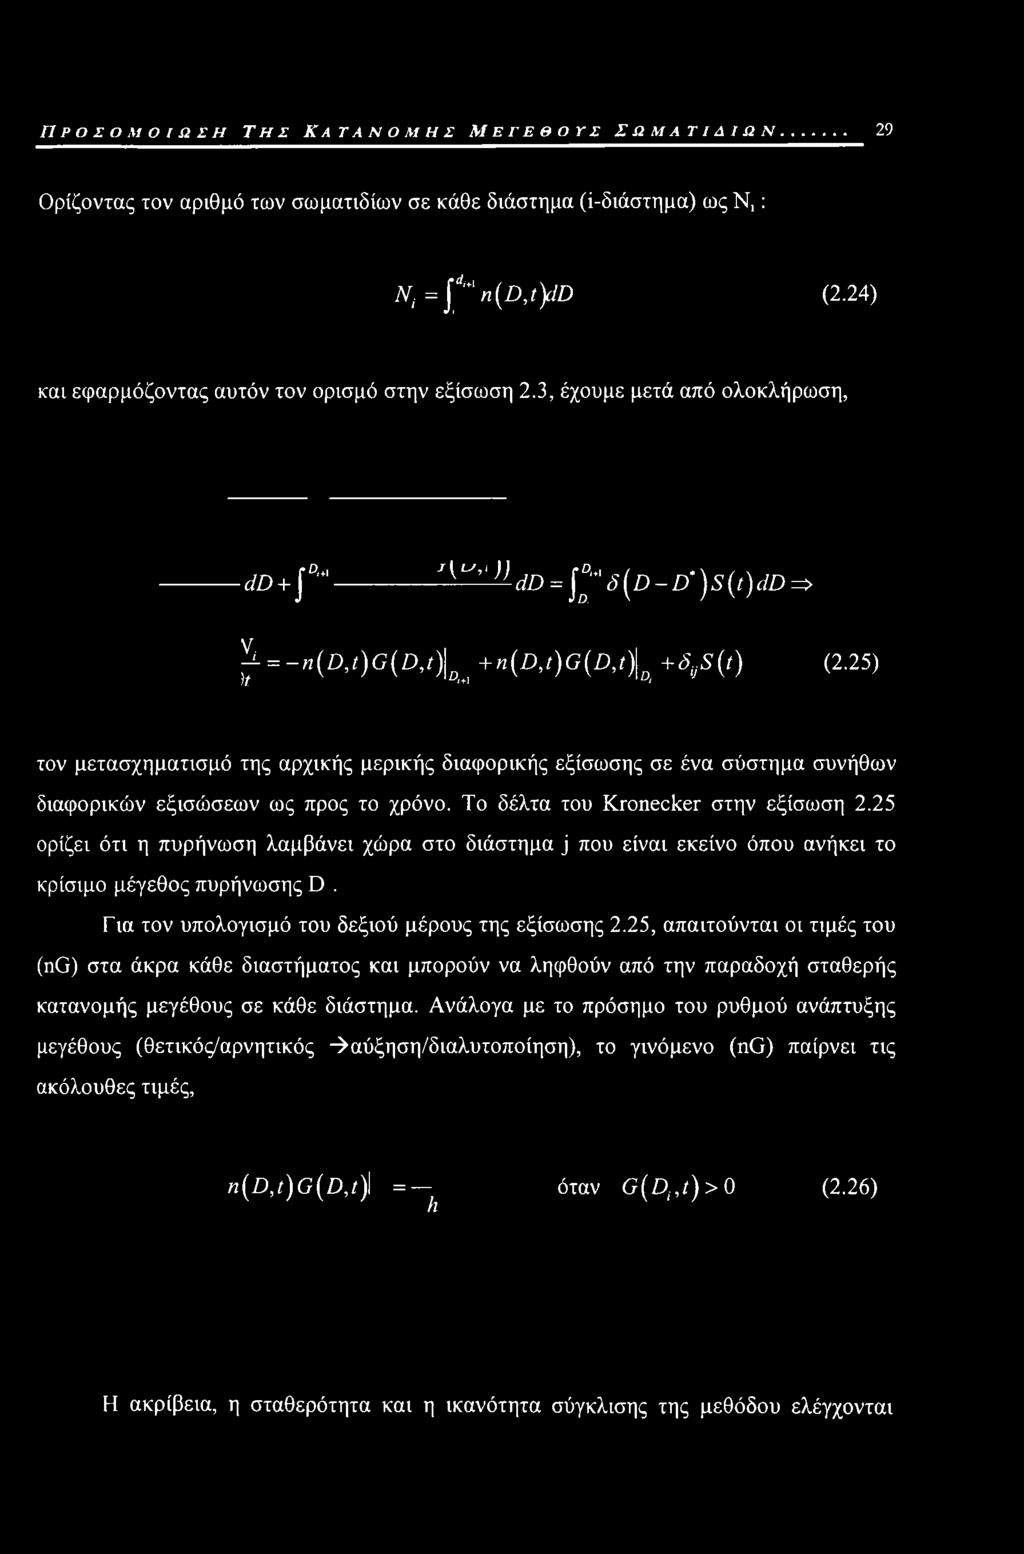 25) τον μετασχηματισμό της αρχικής μερικής διαφορικής εξίσωσης σε ένα σύστημα συνήθων διαφορικών εξισώσεων ως προς το χρόνο. Το δέλτα του Kronecker στην εξίσωση 2.